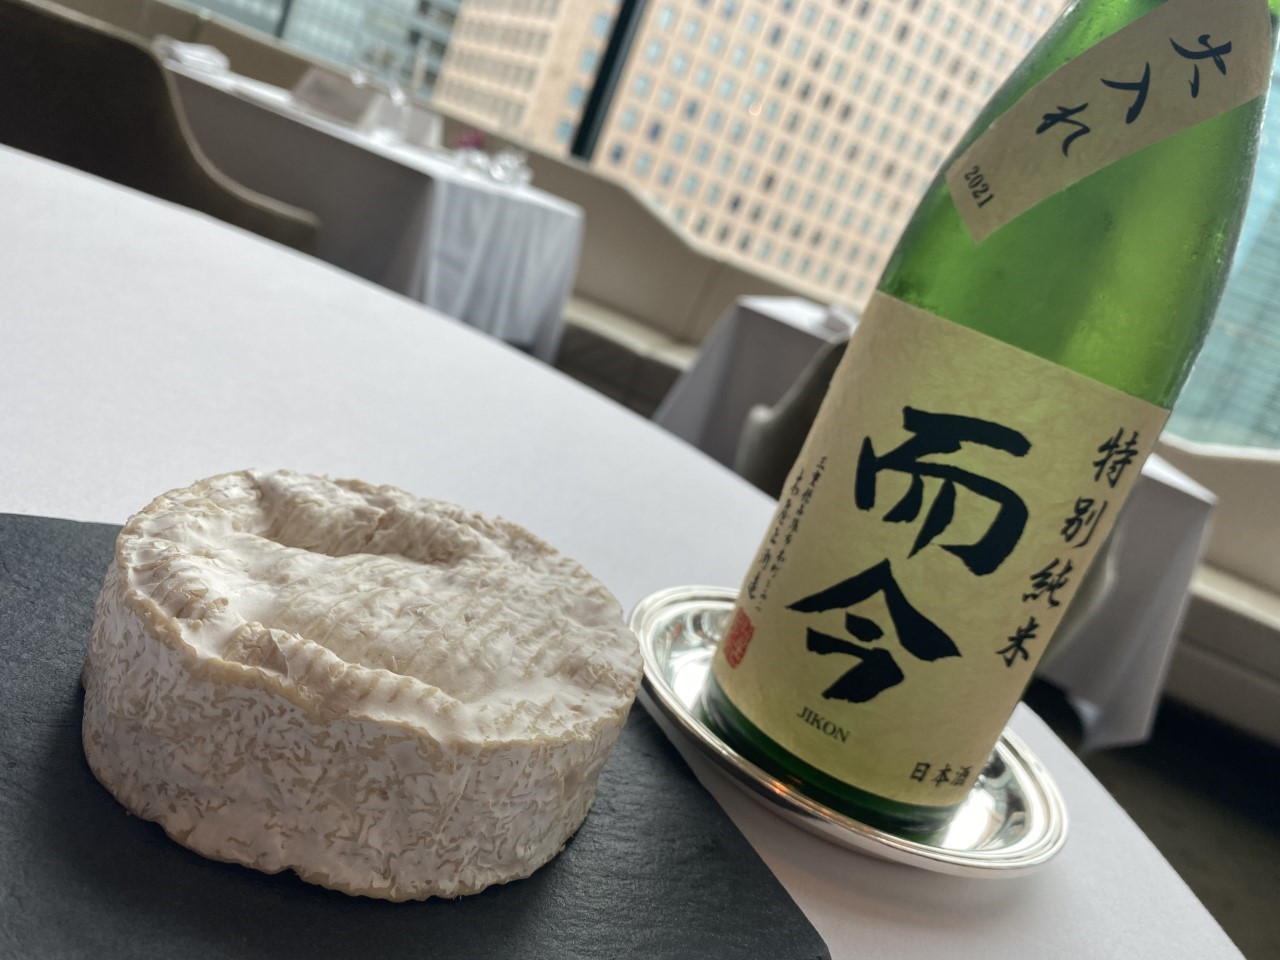 チーズと日本酒のペアリング